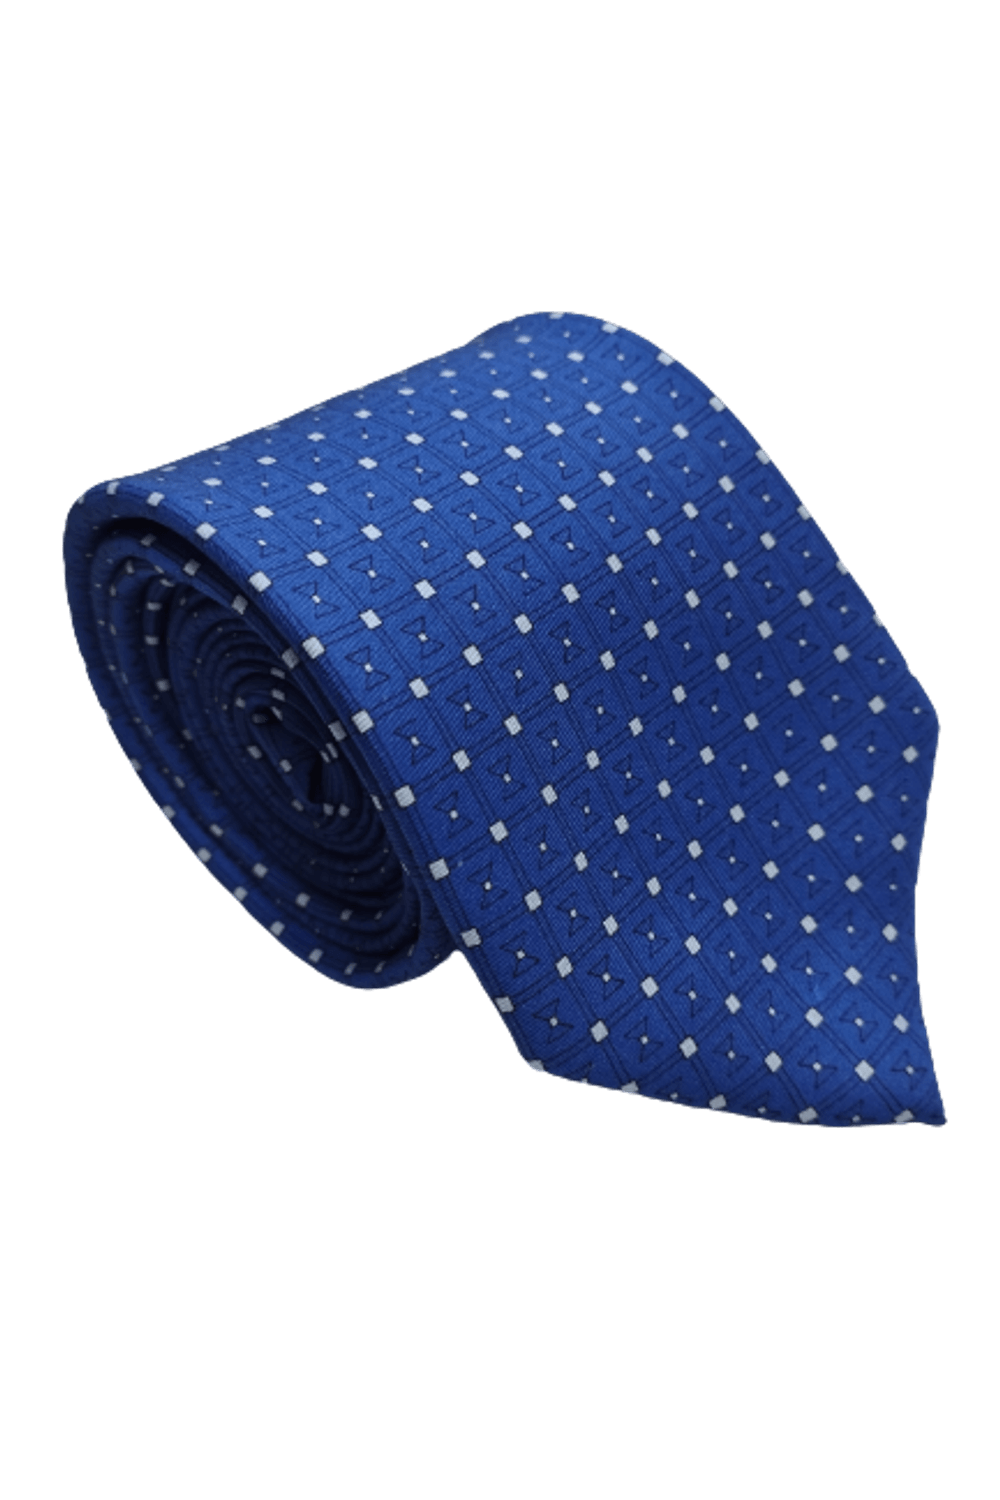 Gravata-Seda-Tradicional-Azul-com-Desenhos-Preto-e-Branco